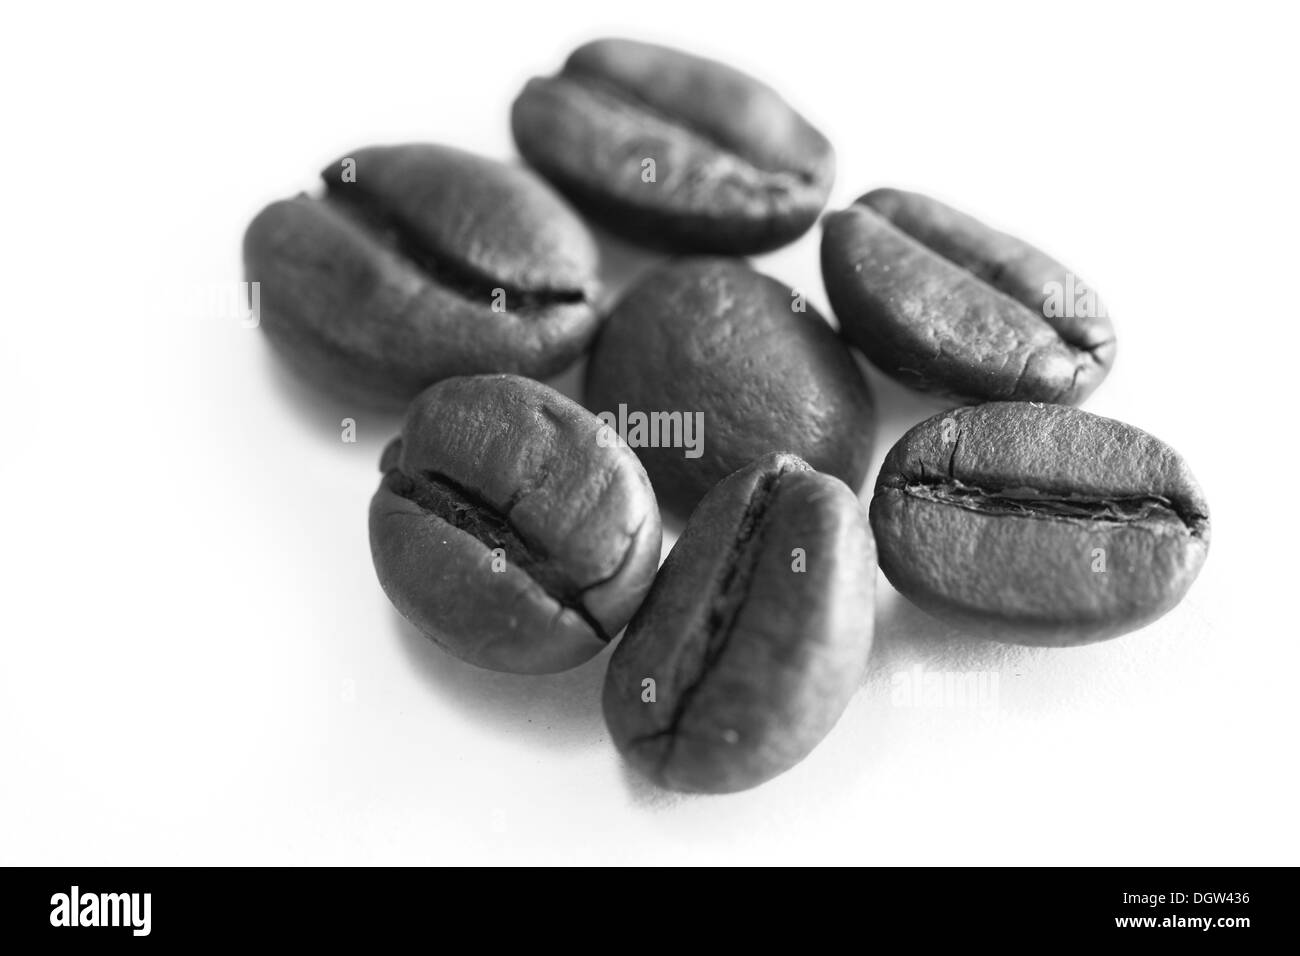 Kaffeebohnen auf weißem Hintergrund Stockfoto